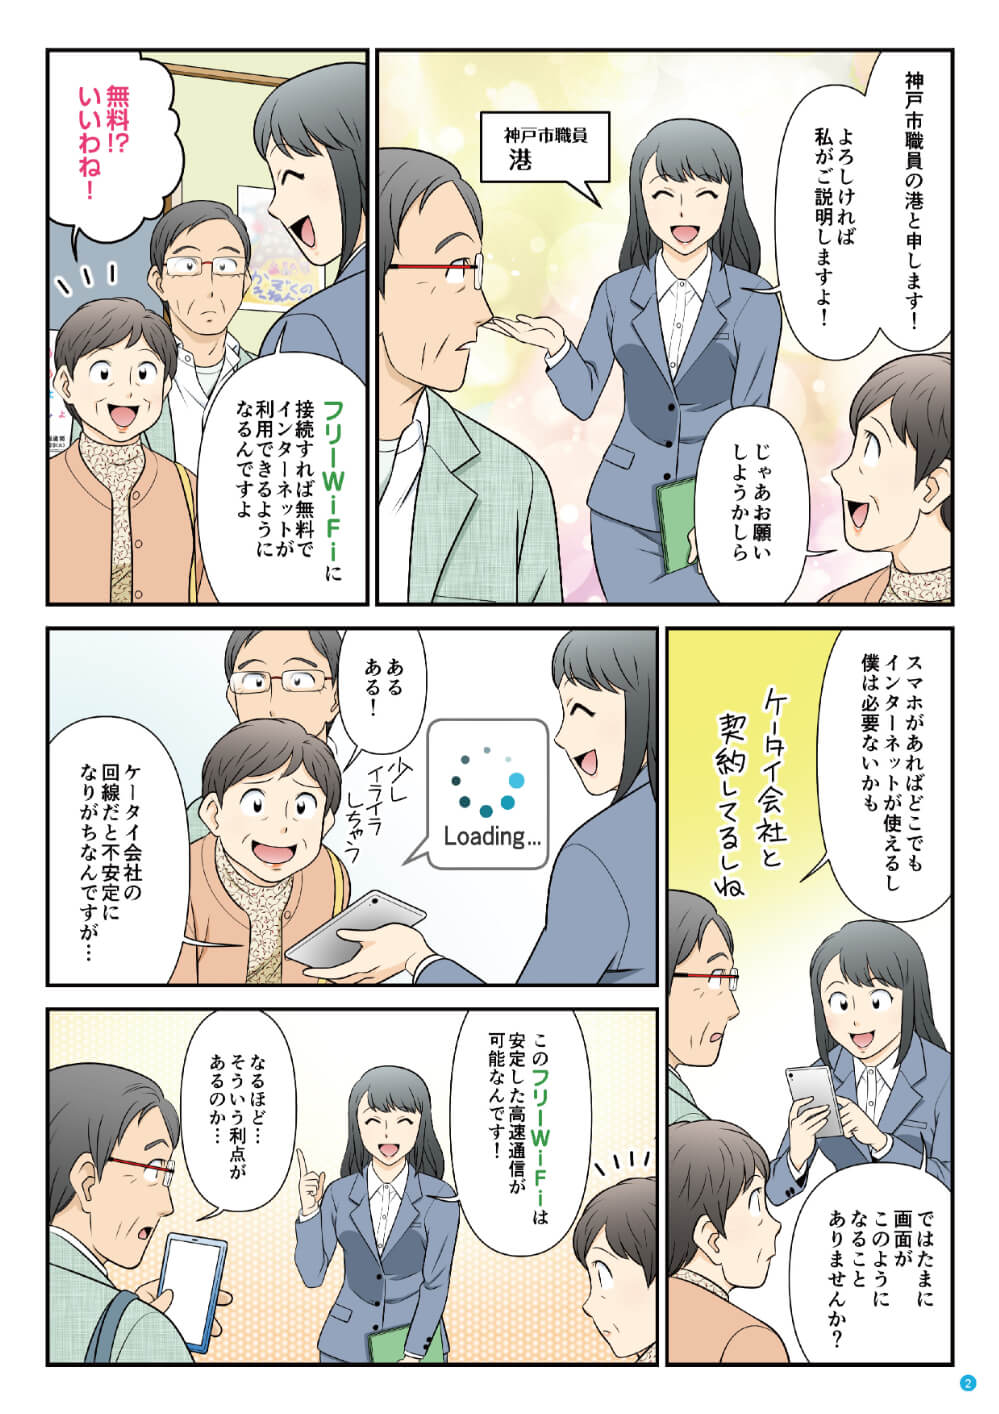 神戸市地域福祉センターフリーWi-Fi　漫画冊子